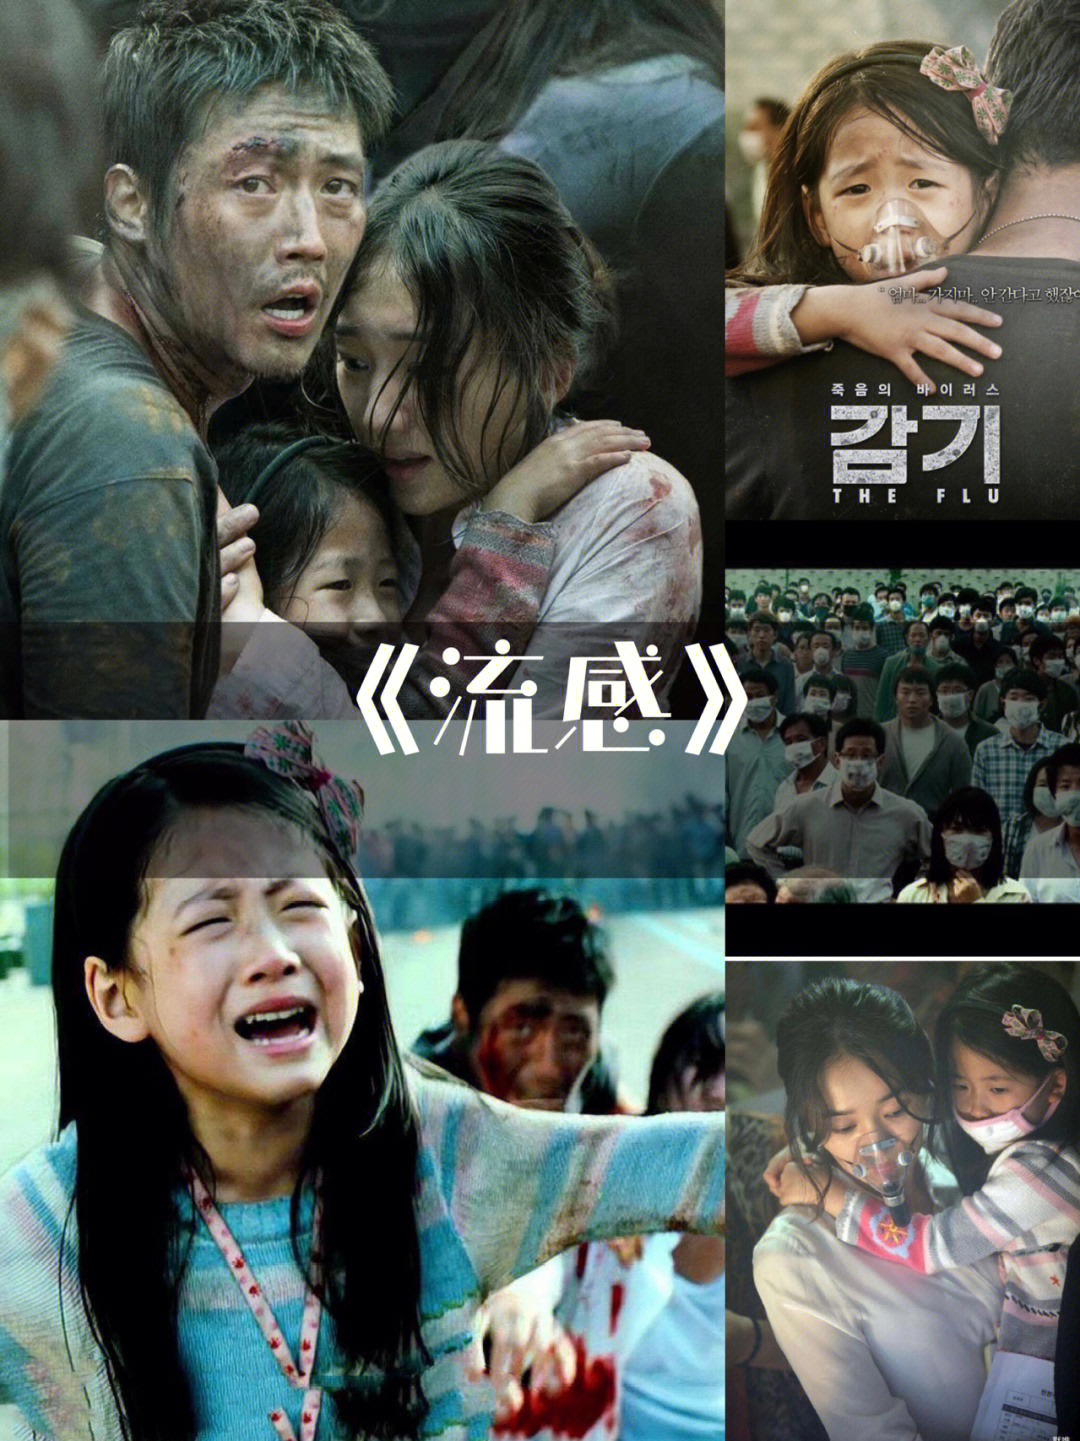 们推荐几部灾难片11566流感96 本片是一部韩国典型的灾难电影